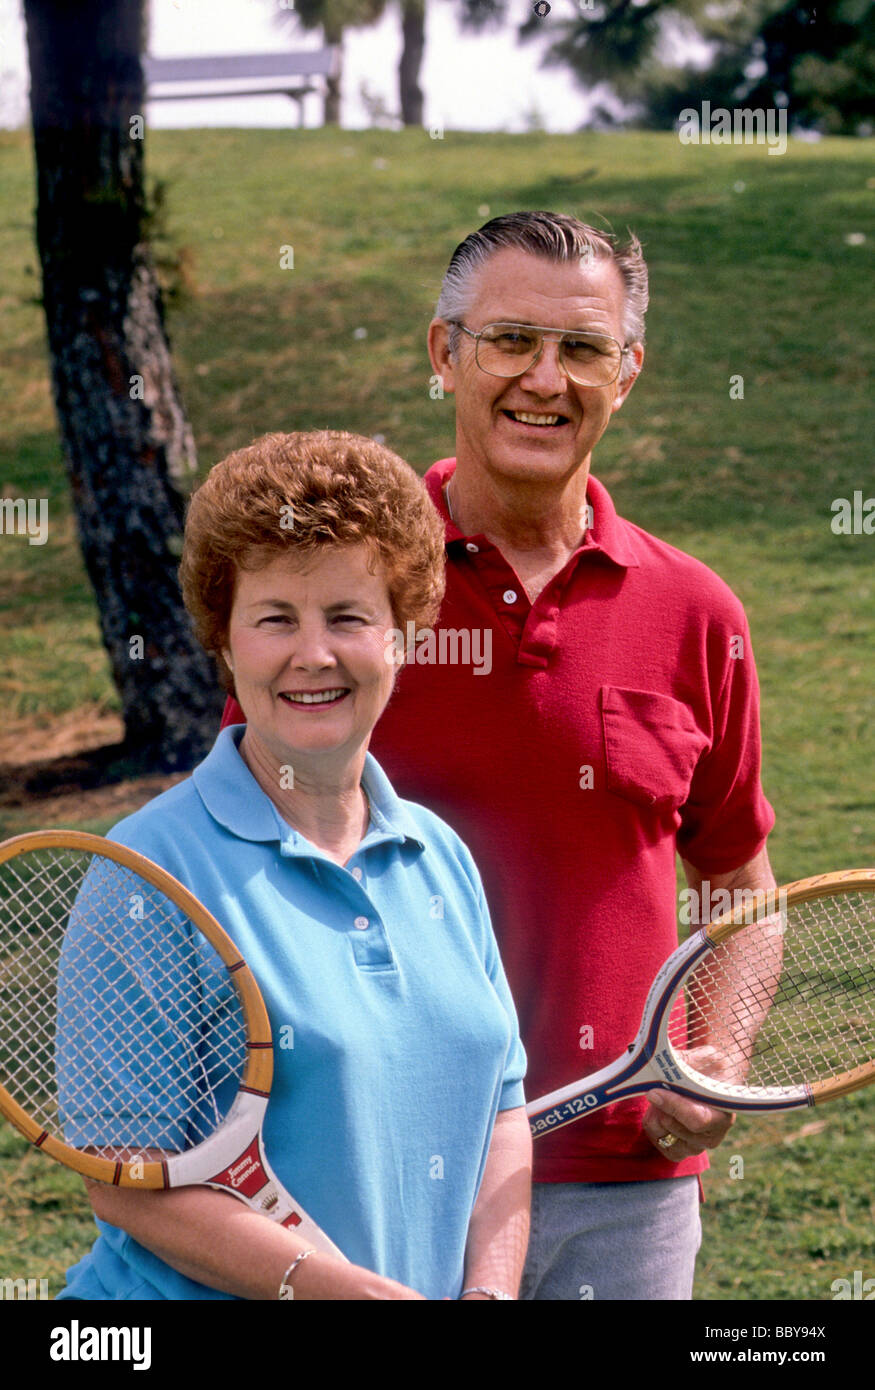 Senior älteres paar Tennis Liebe Aktie Sport Lächeln glücklich Sonne im  freien außerhalb Gesundheit Übung Park Spiel Mann Frau Stockfotografie -  Alamy